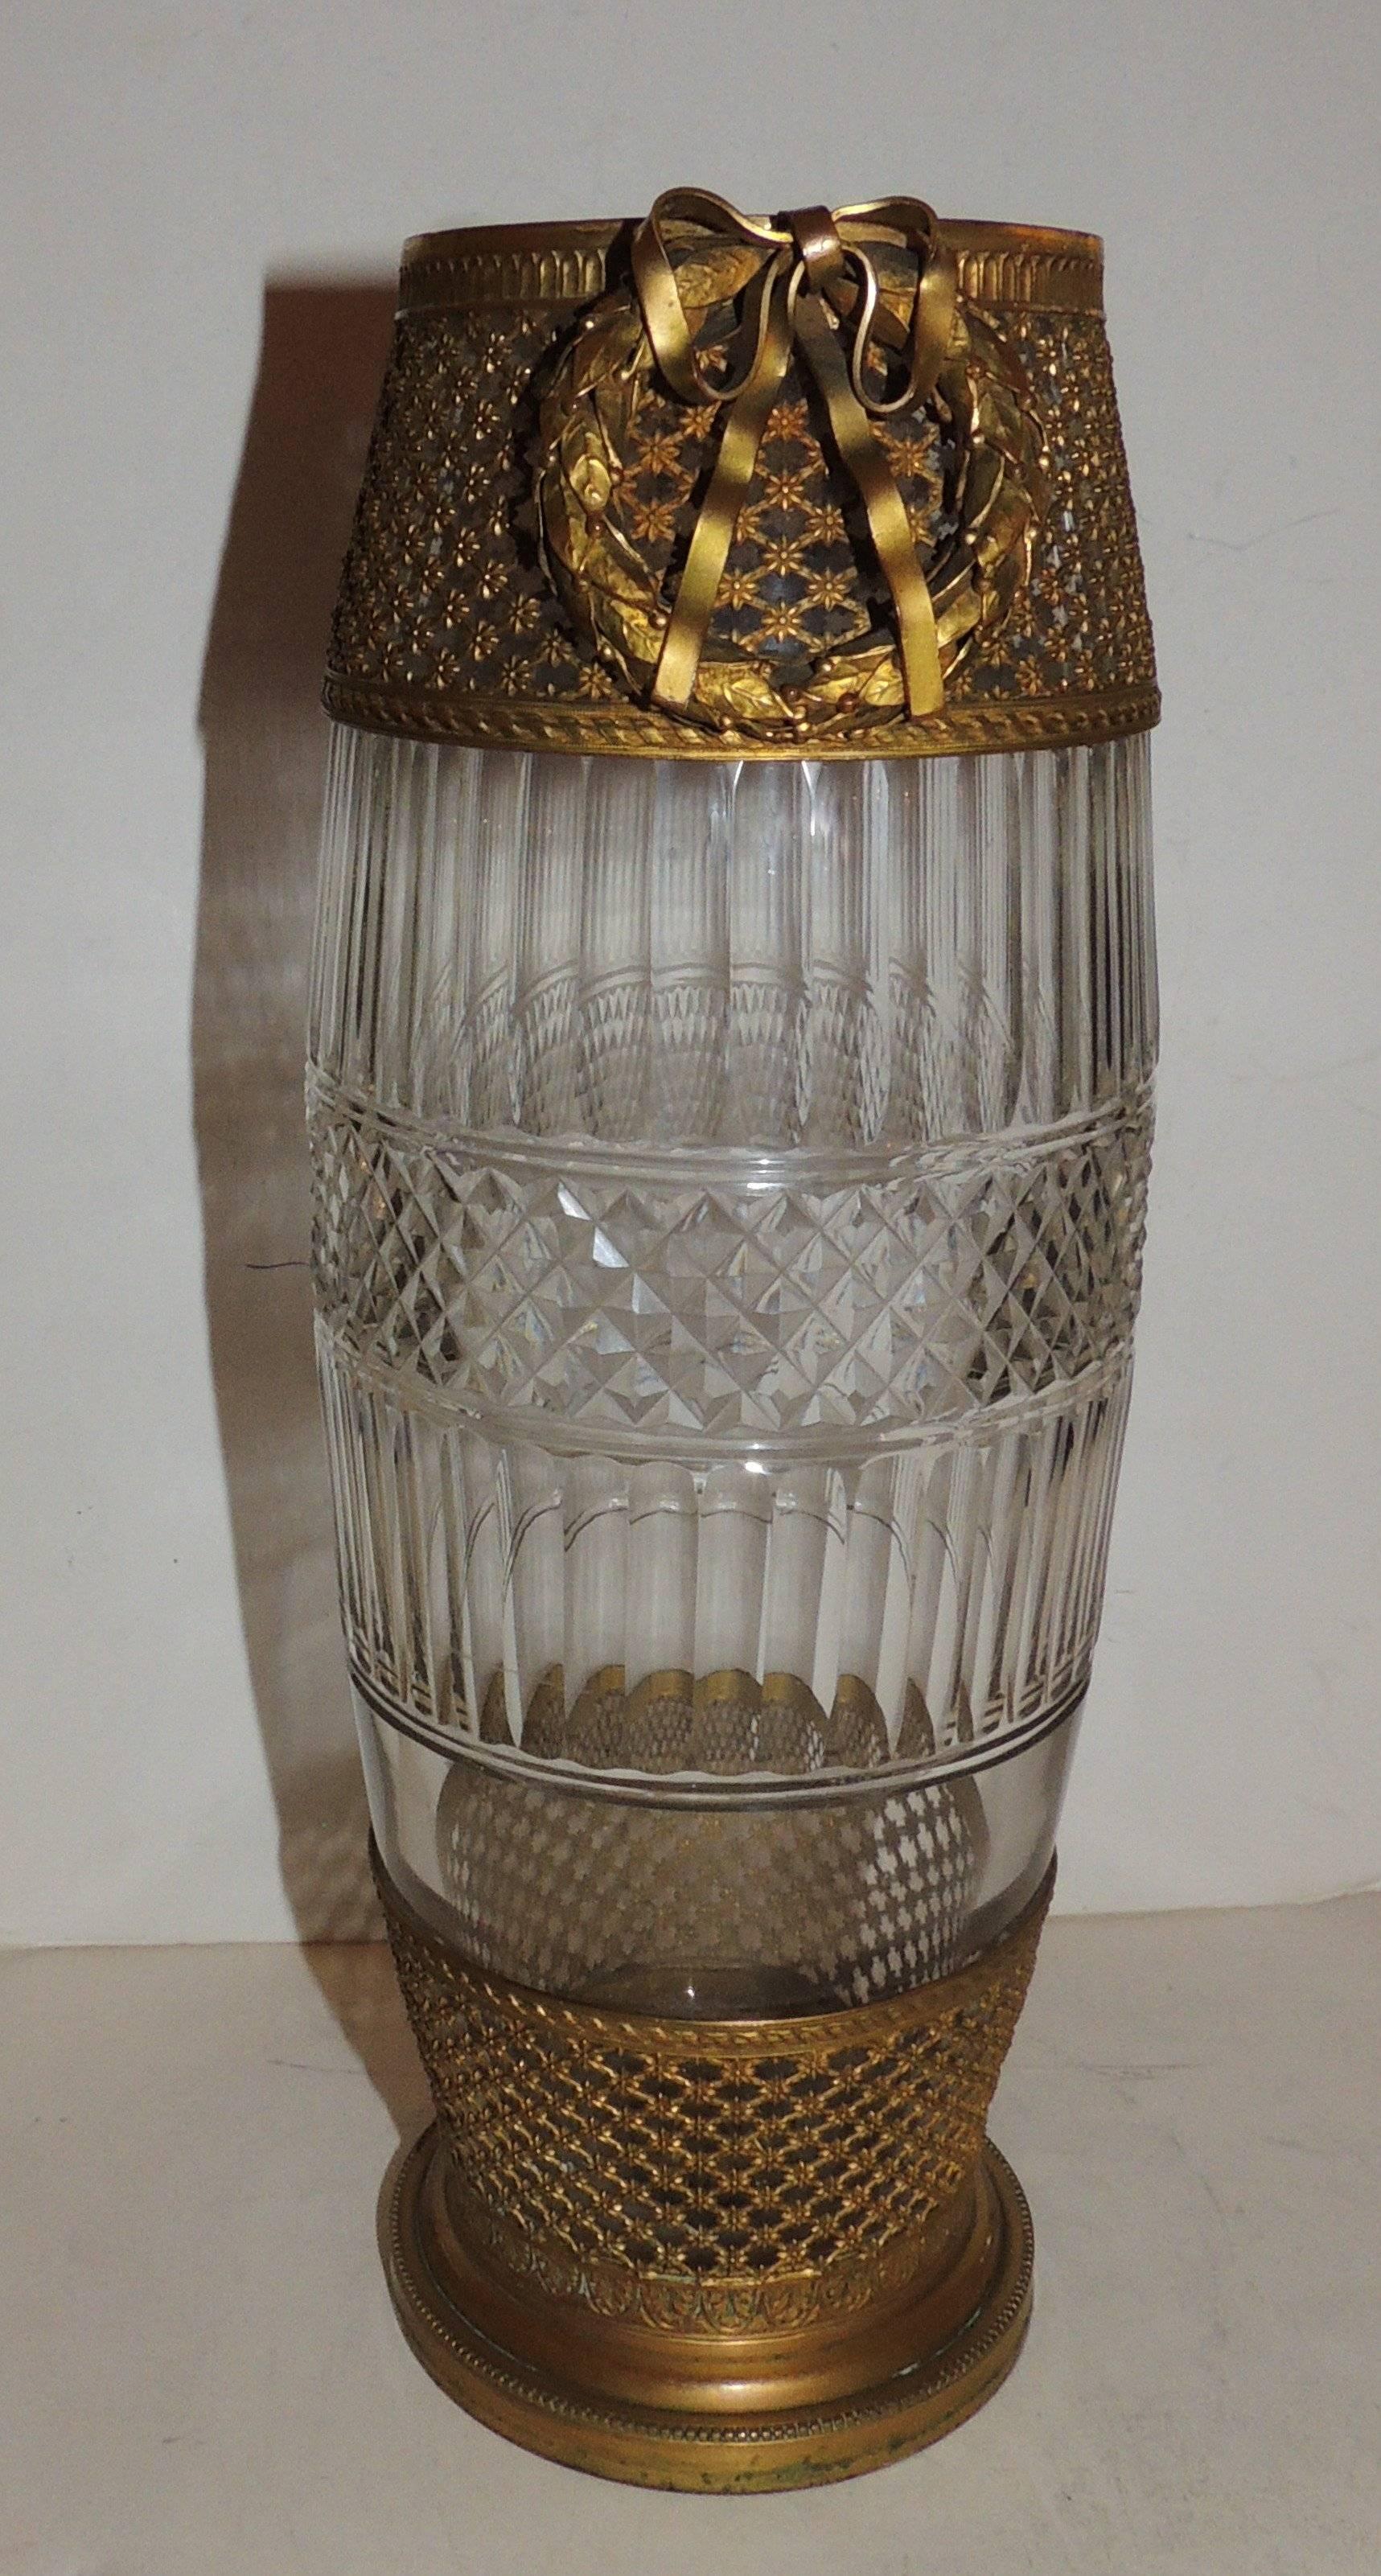 Ein wundervolles Paar französischer Vasen aus vergoldeter Doré-Bronze und Ormolu mit schönen Rosetten und großen Kränzen auf beiden durchbrochenen Bändern mit geriffelten und geschliffenen Kristallvasen.

Maße: 5,5